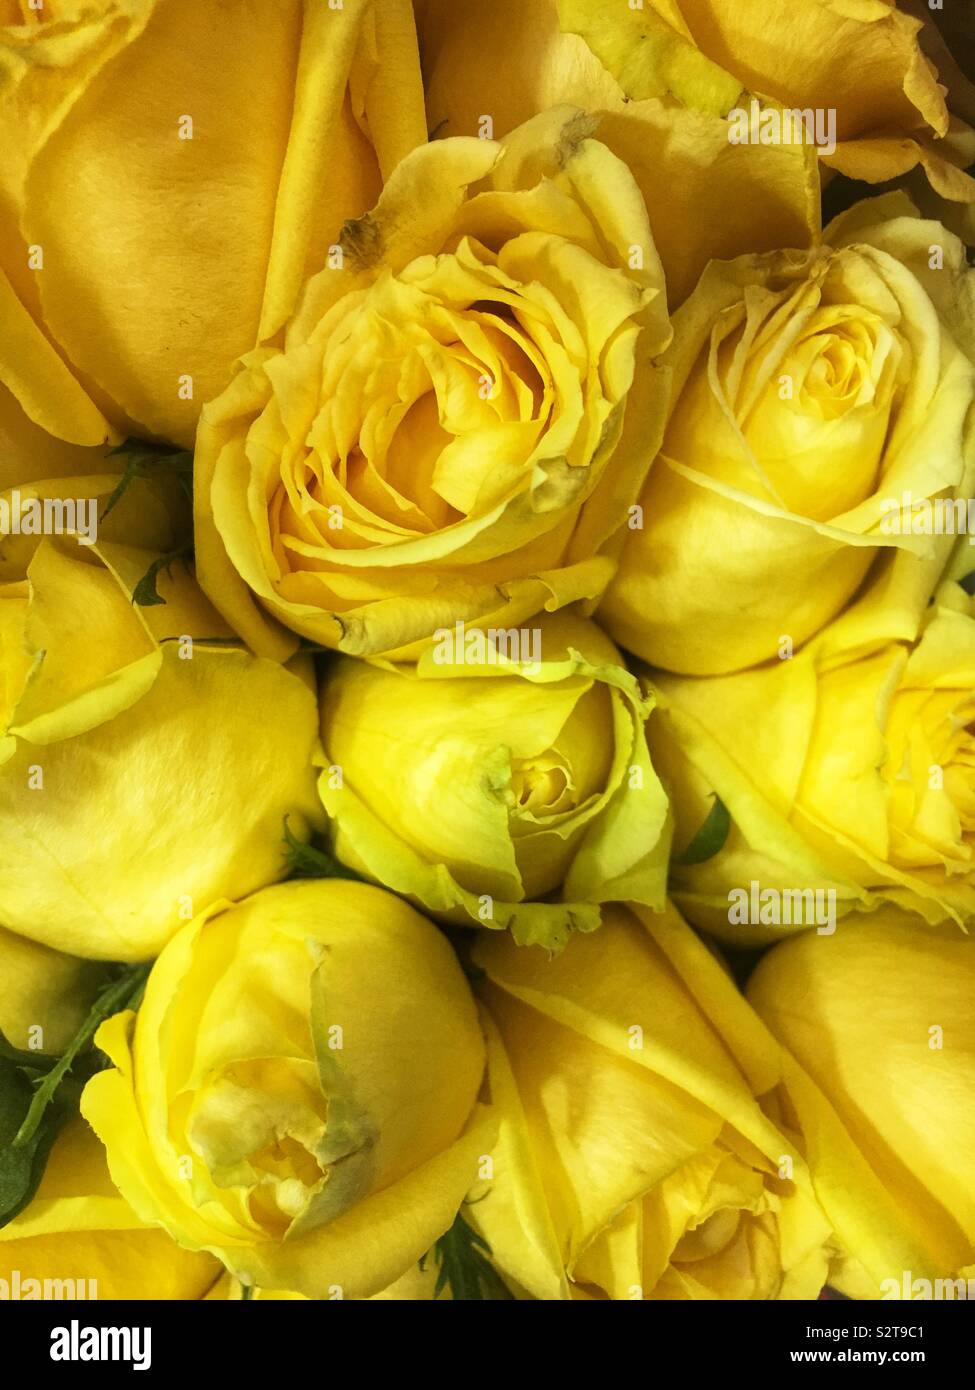 Fresh yellow roses. Stock Photo